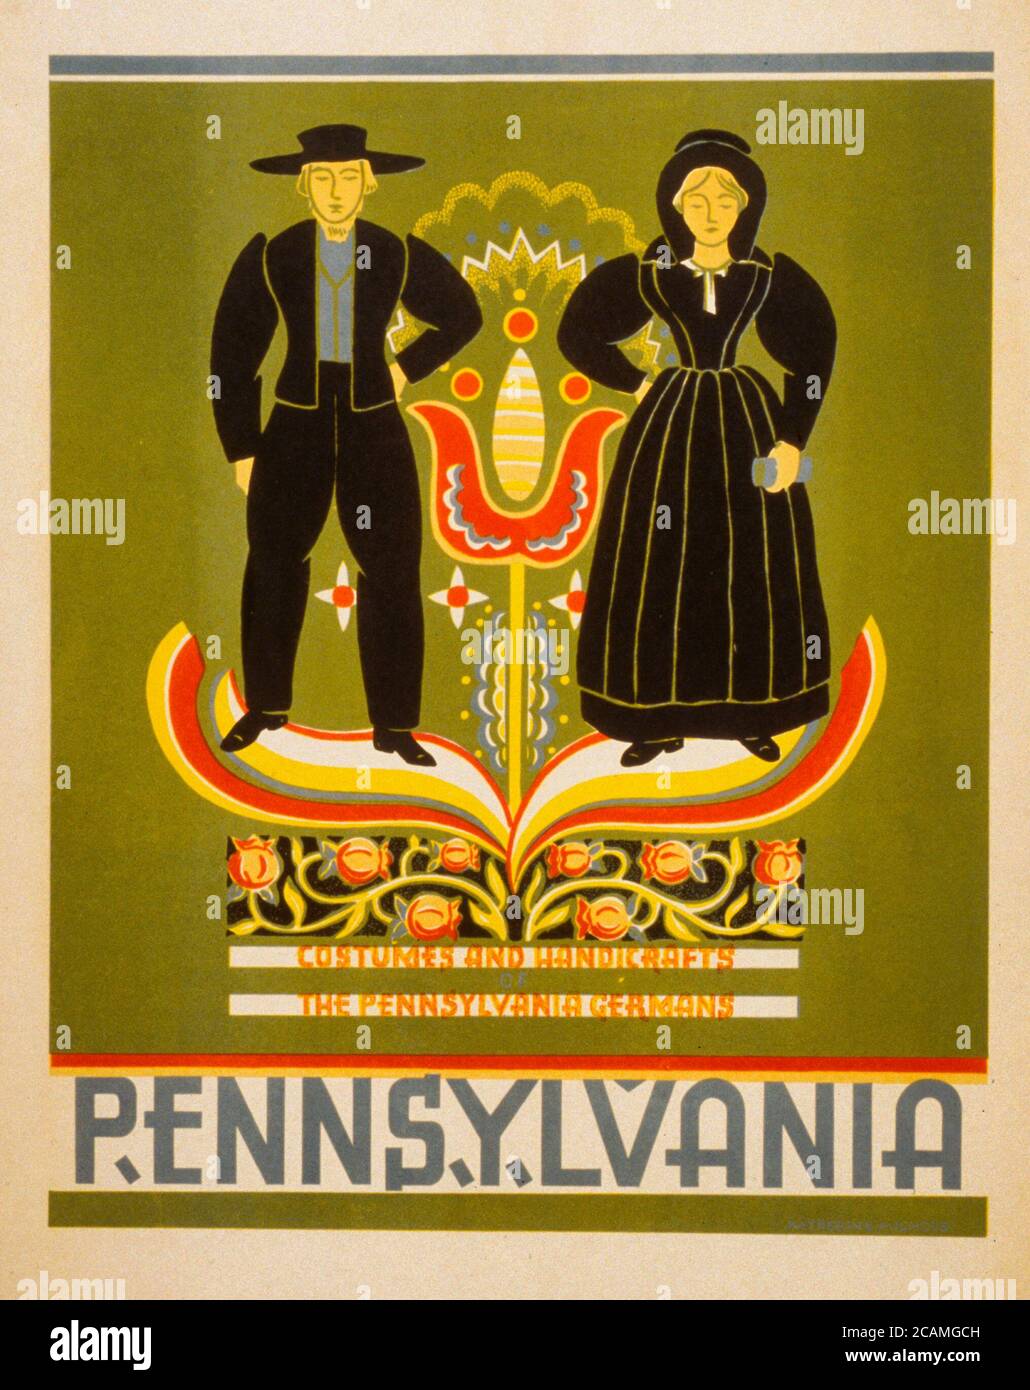 Trajes y artesanías de Pennsylvania, los alemanes de Pennsylvania. Cartel promoviendo Pennsylvania, mostrando una pareja Amish, alrededor de 1939 Foto de stock